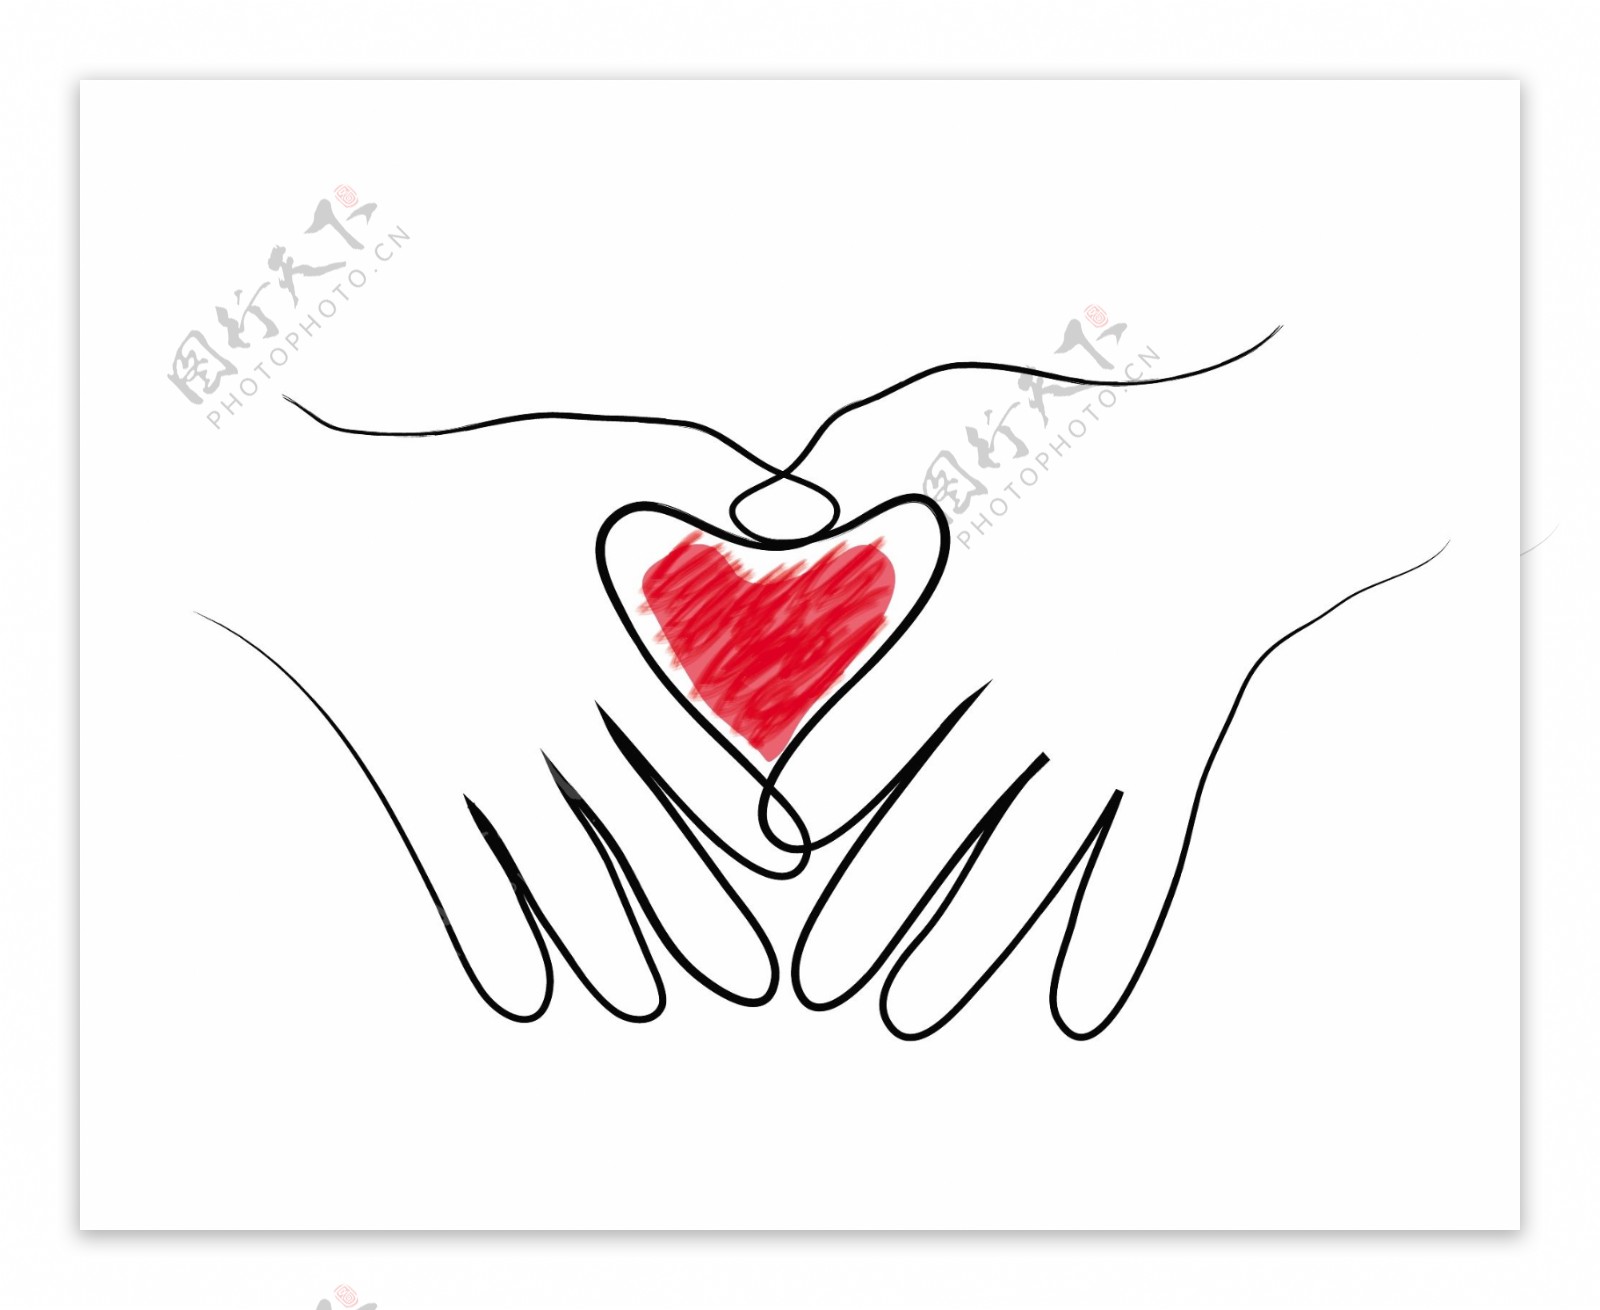 可愛的比心手勢 手繪比心手勢 紅色的桃心 愛心比心手勢, 美麗的心手勢, 粉紅心形手勢, 可愛的心手勢素材圖案，PSD和PNG圖片免費下載